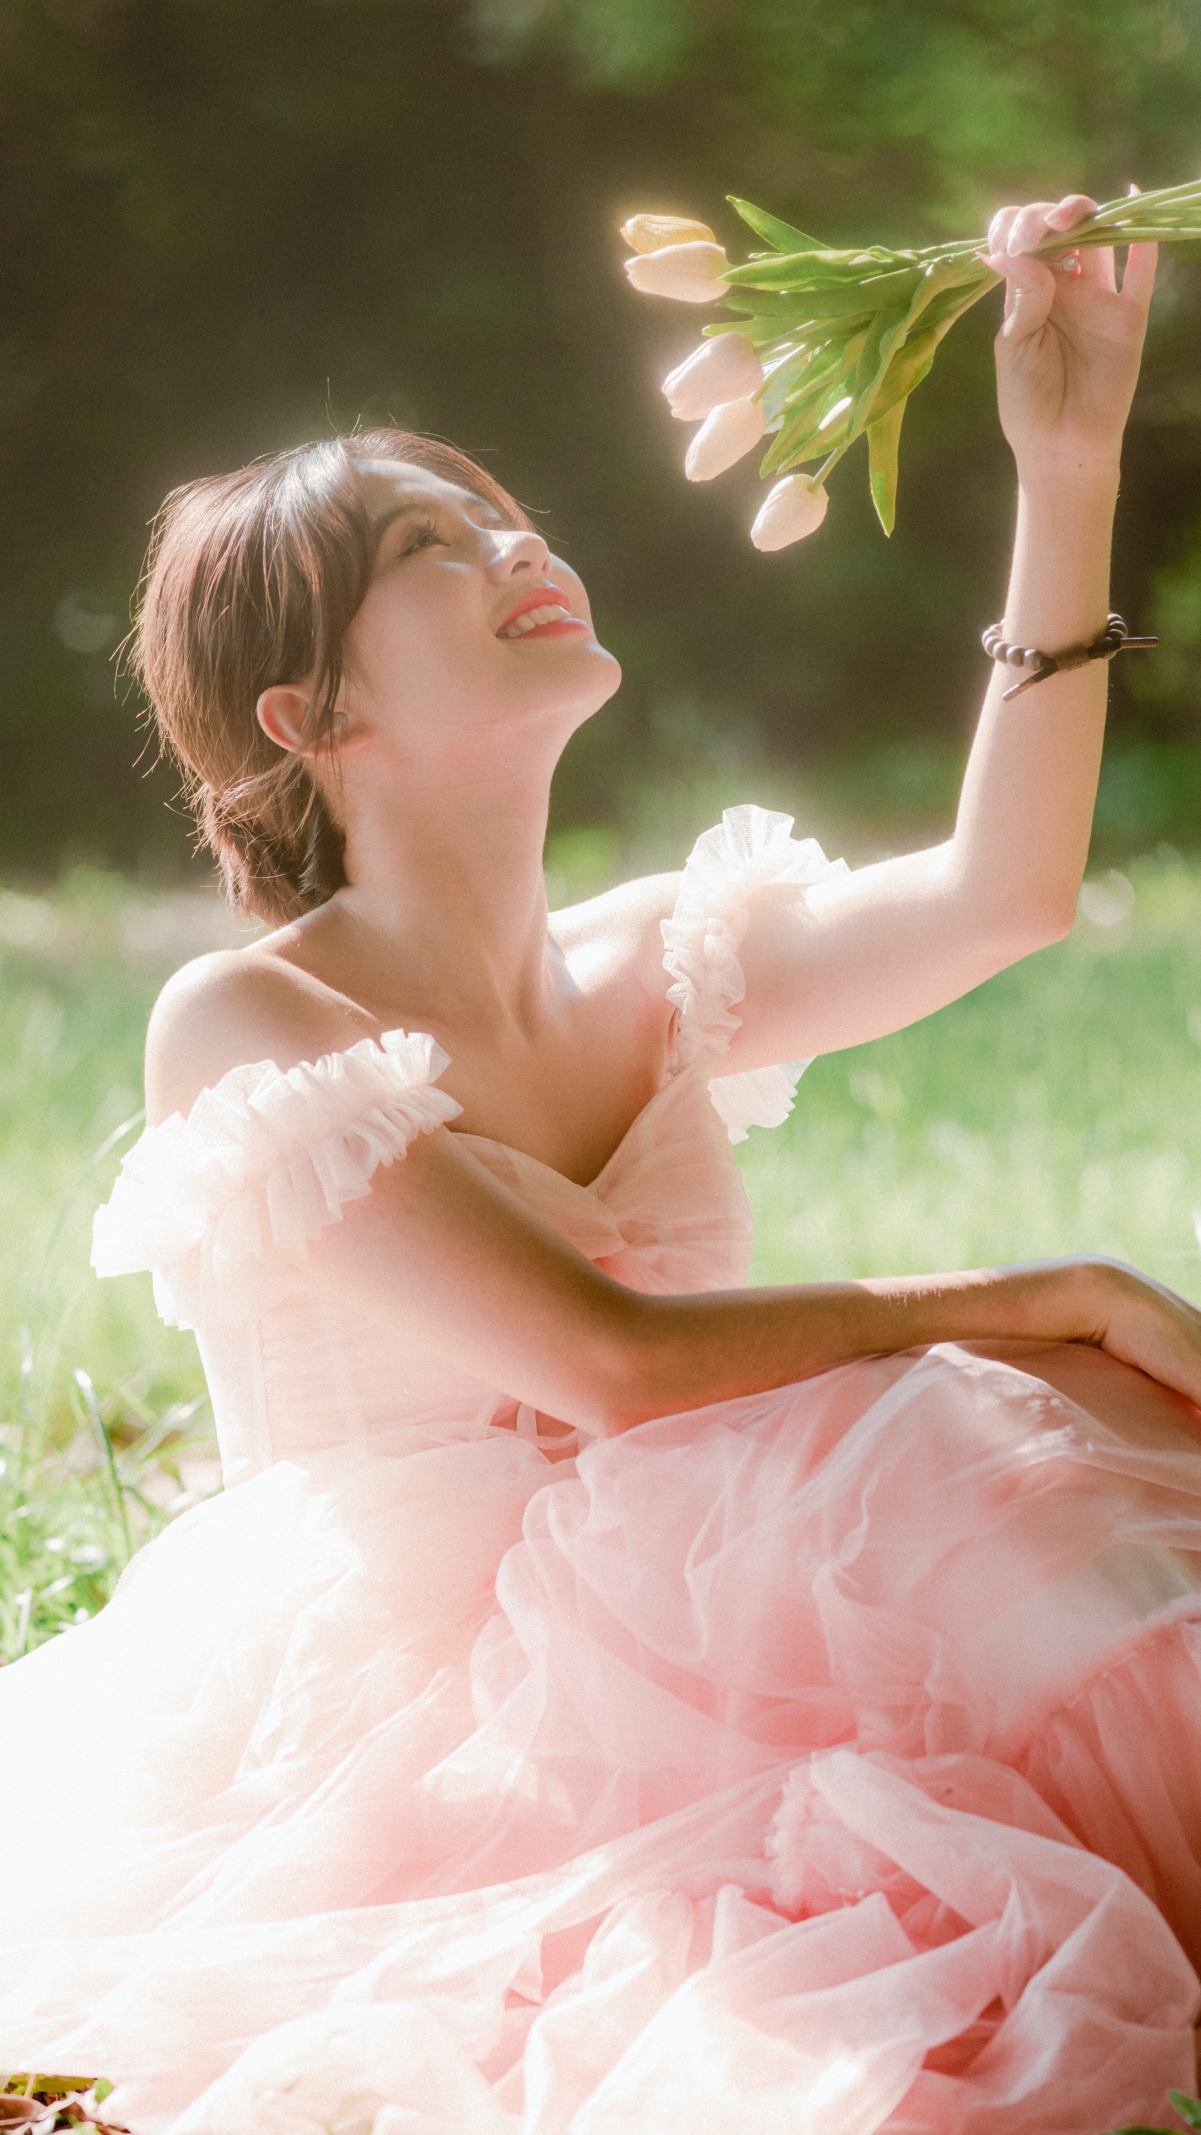 女神节快乐 森林 坐在草地上的美女 粉色裙子 鲜花 微笑 4k手机壁纸